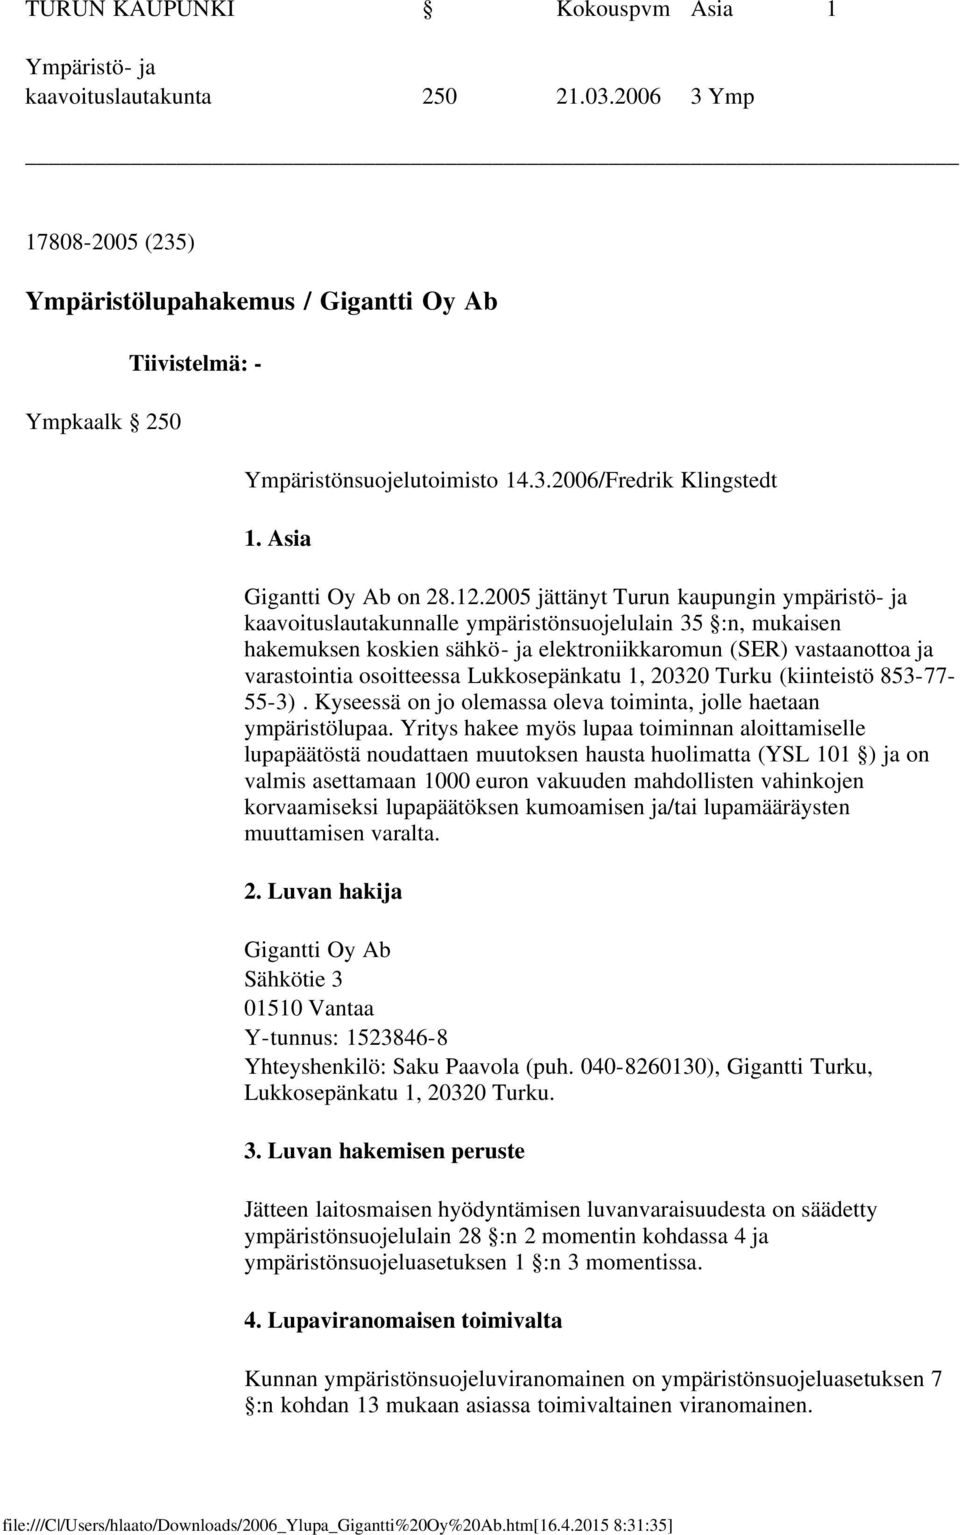 2005 jättänyt Turun kaupungin ympäristö- ja kaavoituslautakunnalle ympäristönsuojelulain 35 :n, mukaisen hakemuksen koskien sähkö- ja elektroniikkaromun (SER) vastaanottoa ja varastointia osoitteessa